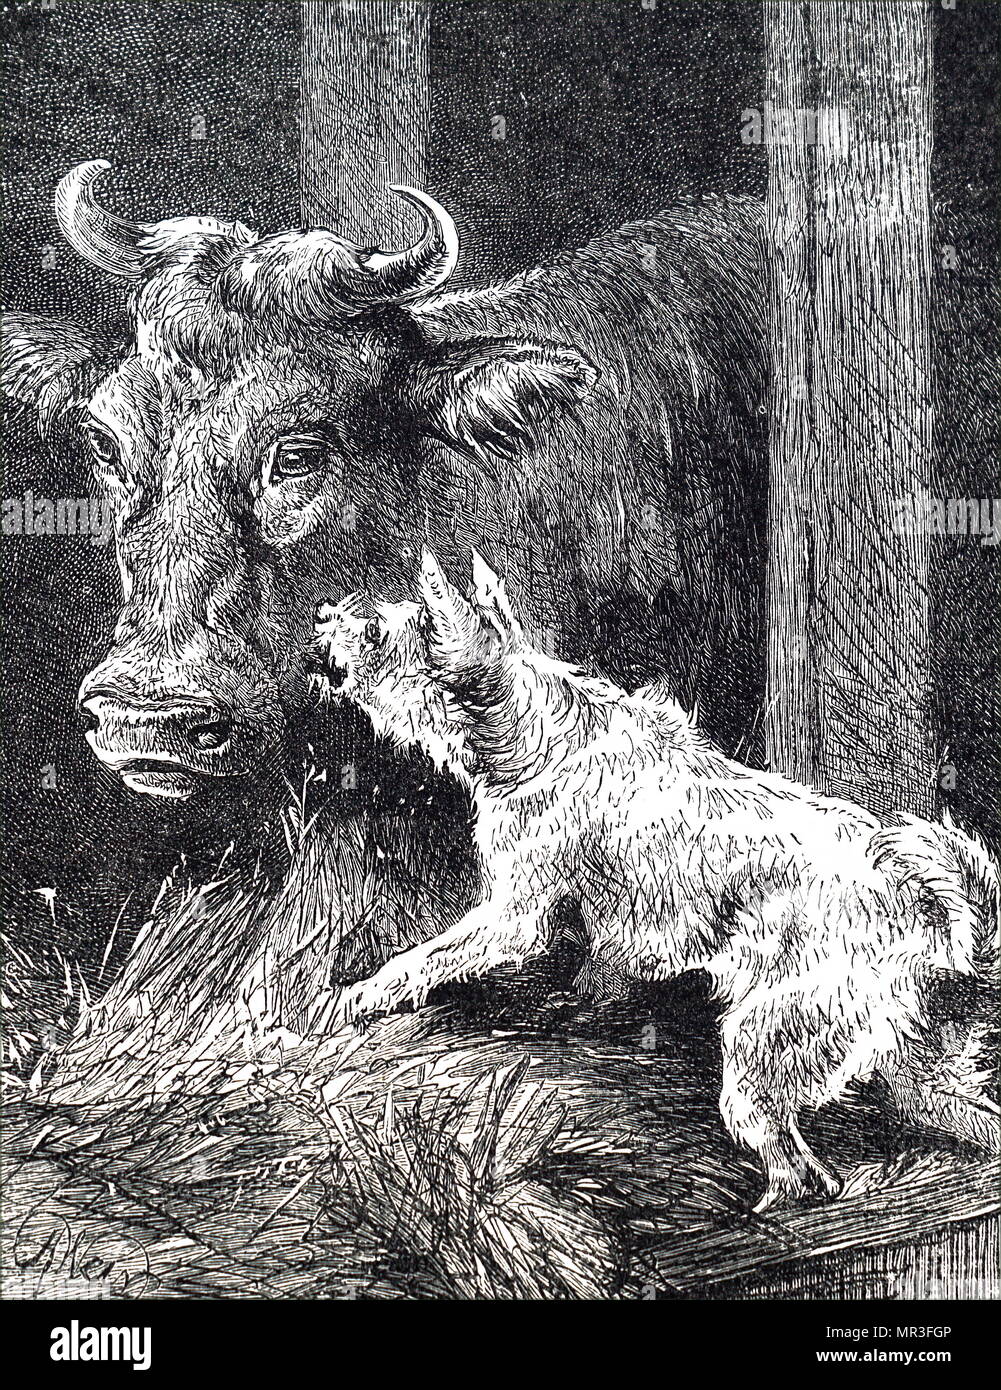 Ilustración mostrando un perro y una vaca a conservar el calor dentro de un pesebre durante el invierno. Fecha del siglo XIX Foto de stock